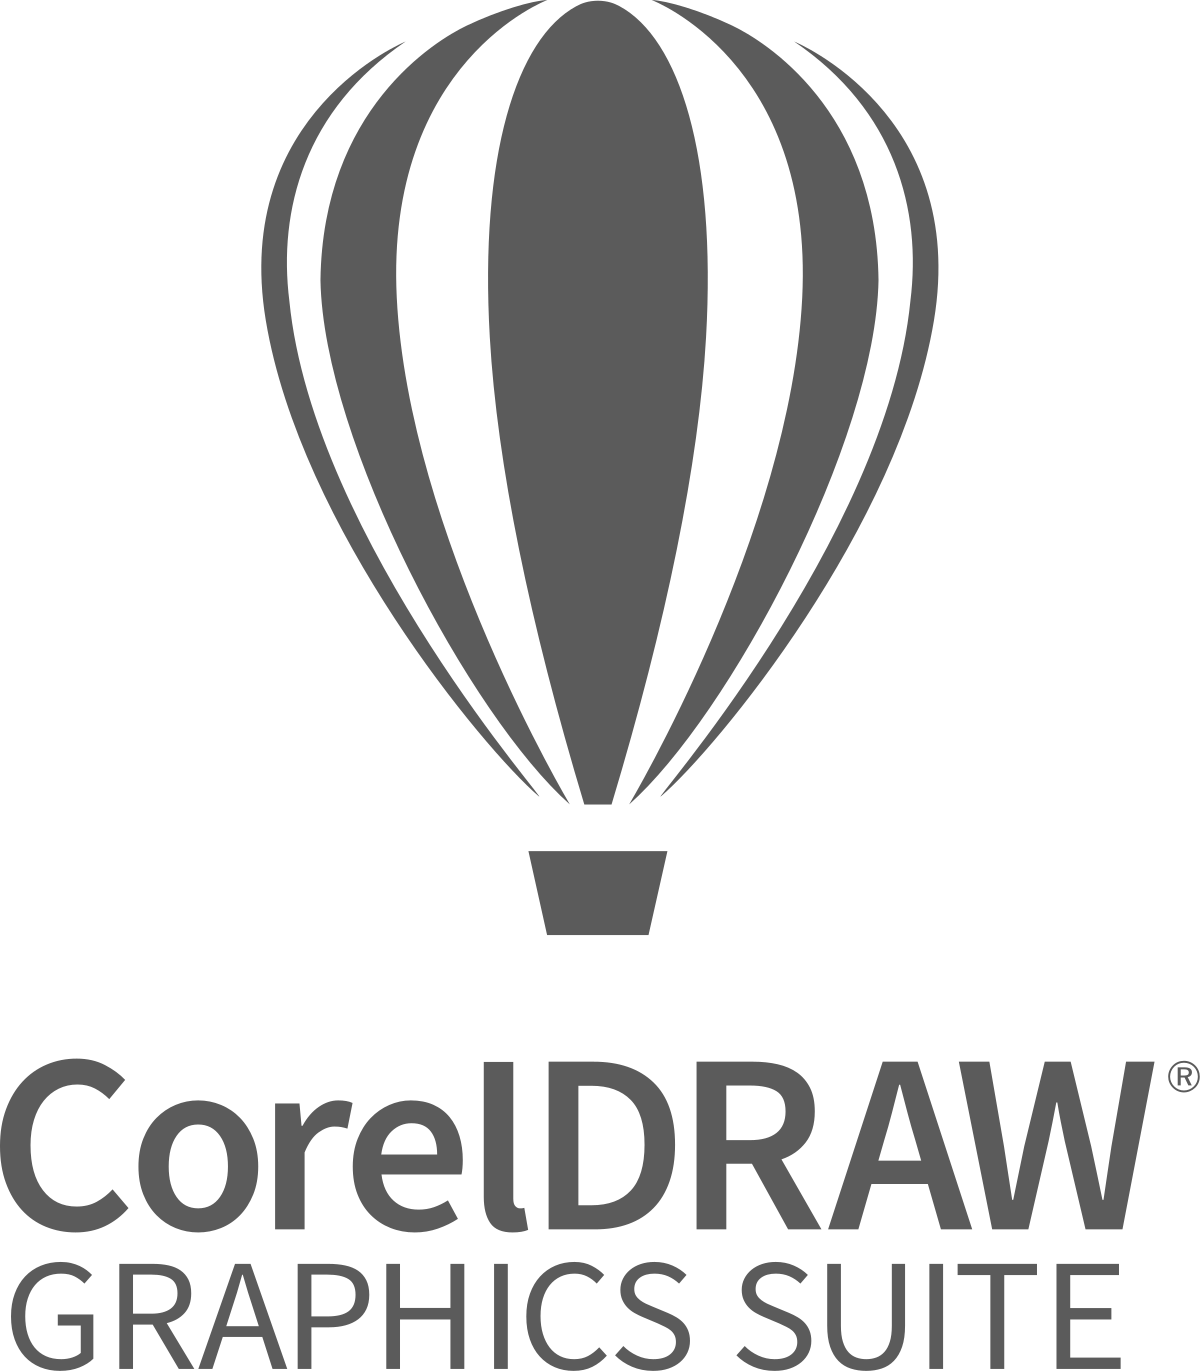 Buy CorelDRAW Technical Suite 2020 (1 PC, Lifetime) - Corel Key - GLOBAL -  Cheap - G2A.COM!